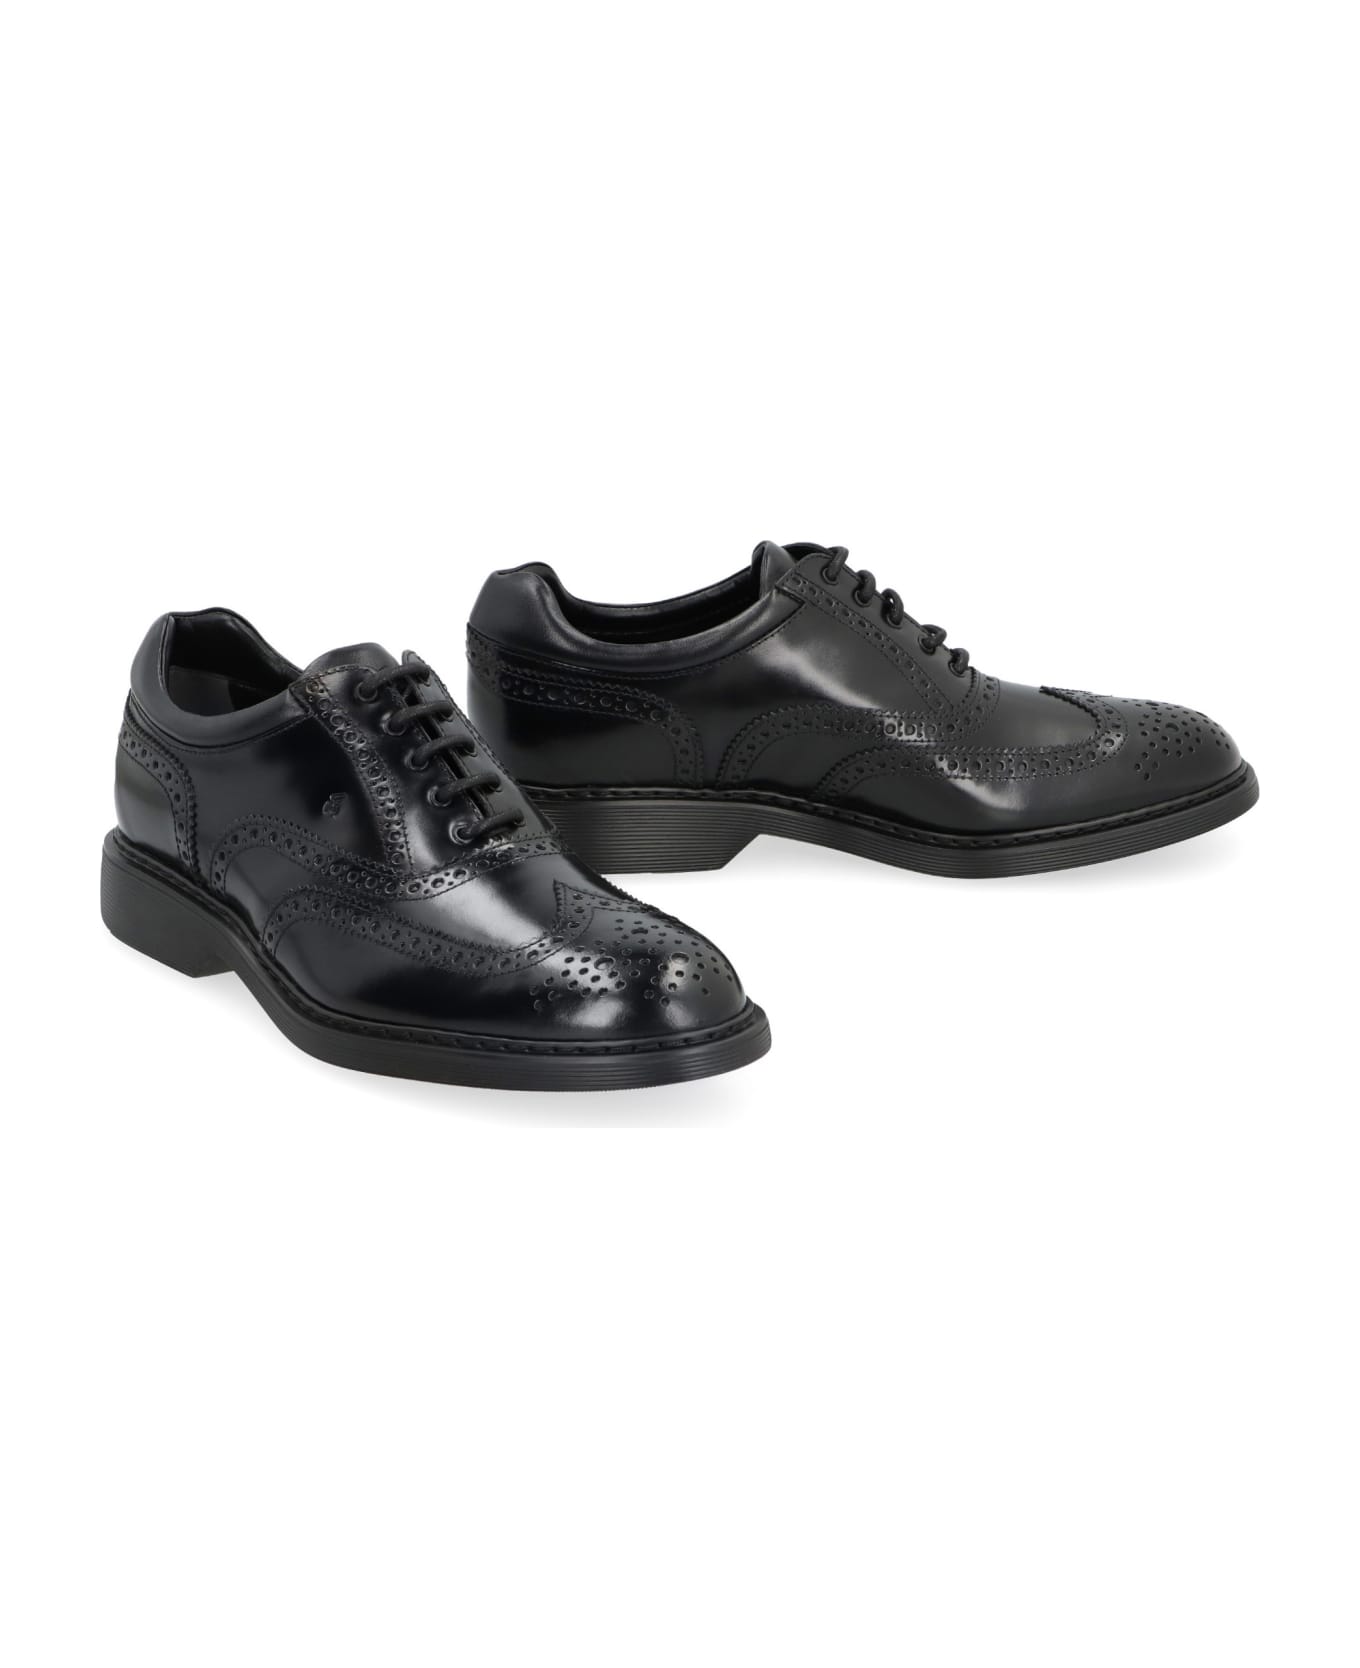 Hogan H576 Leather Lace-up Shoes - BLACK